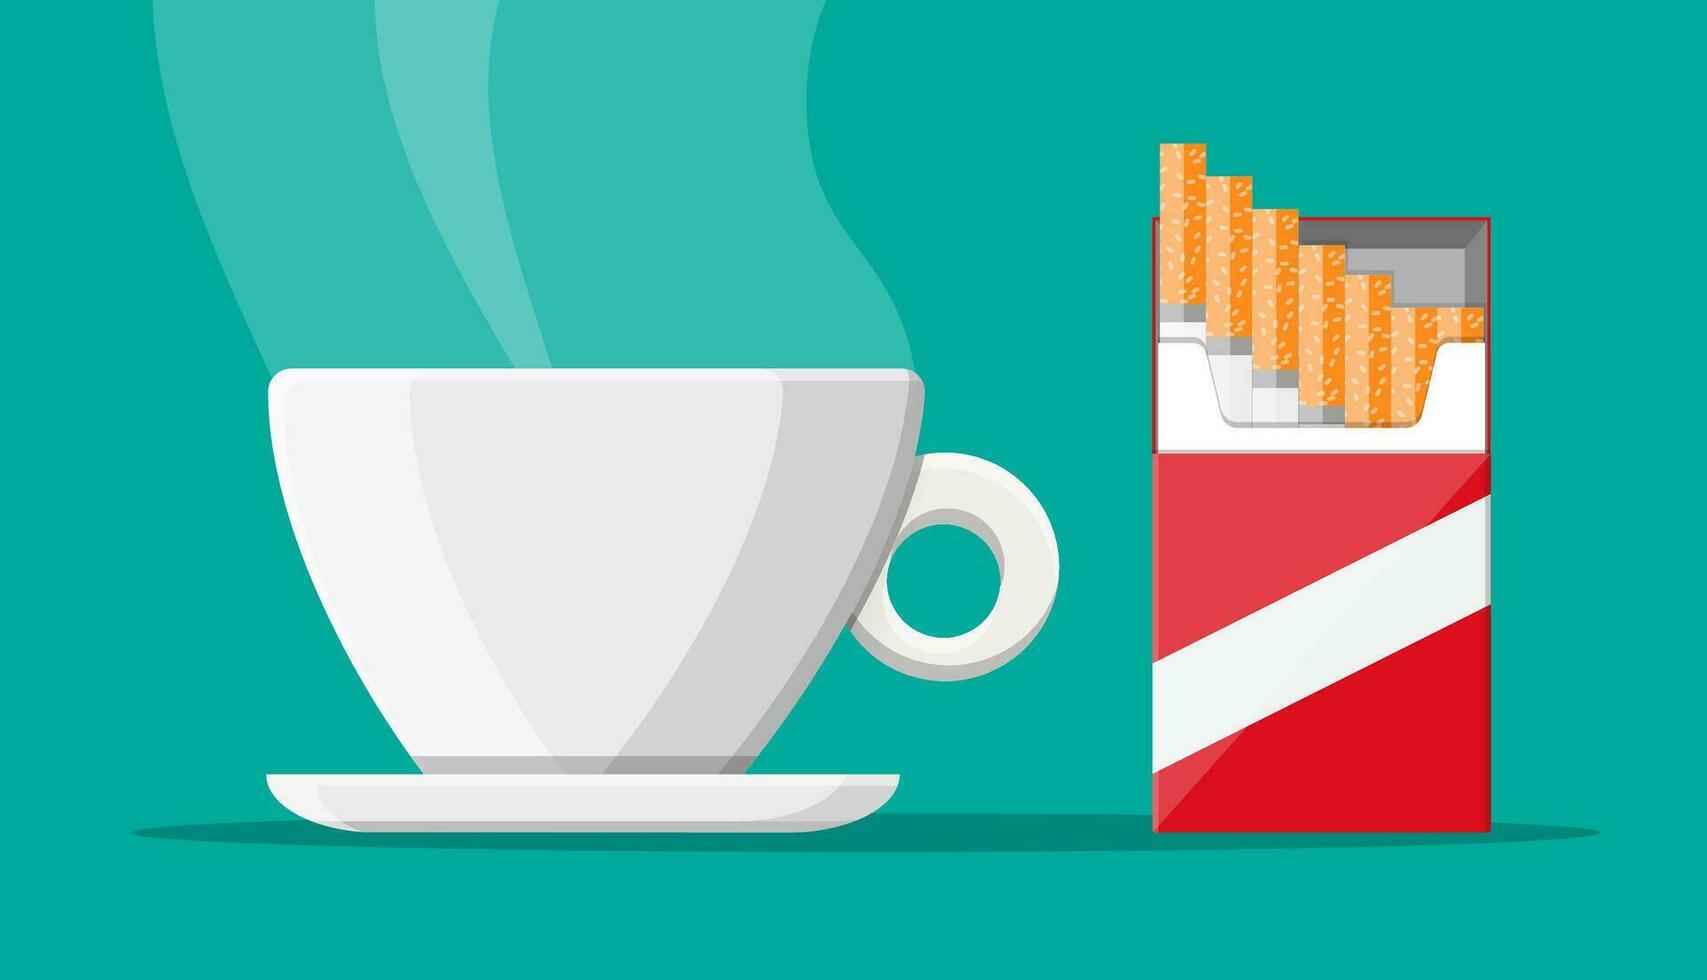 koffie kop en pakket van sigaretten. ongezond levensstijl. ontbijt en ochtend. vector illustratie in vlak stijl